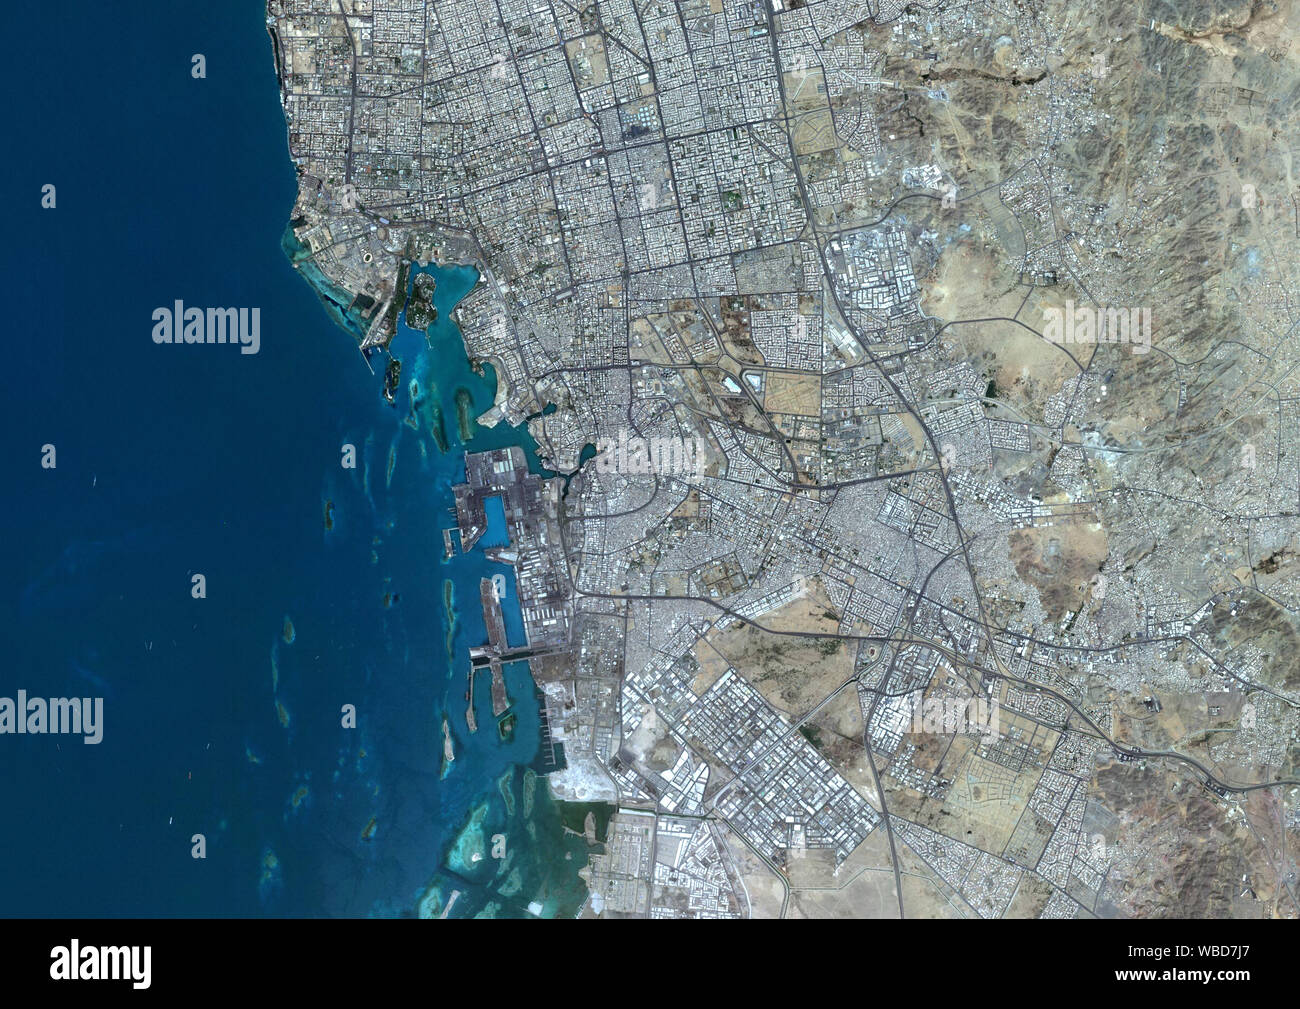 Colore immagine satellitare di Jeddah, Arabia Saudita. Immagine raccolta in maggio 17, 2018 da Sentinel-2 satelliti. Foto Stock